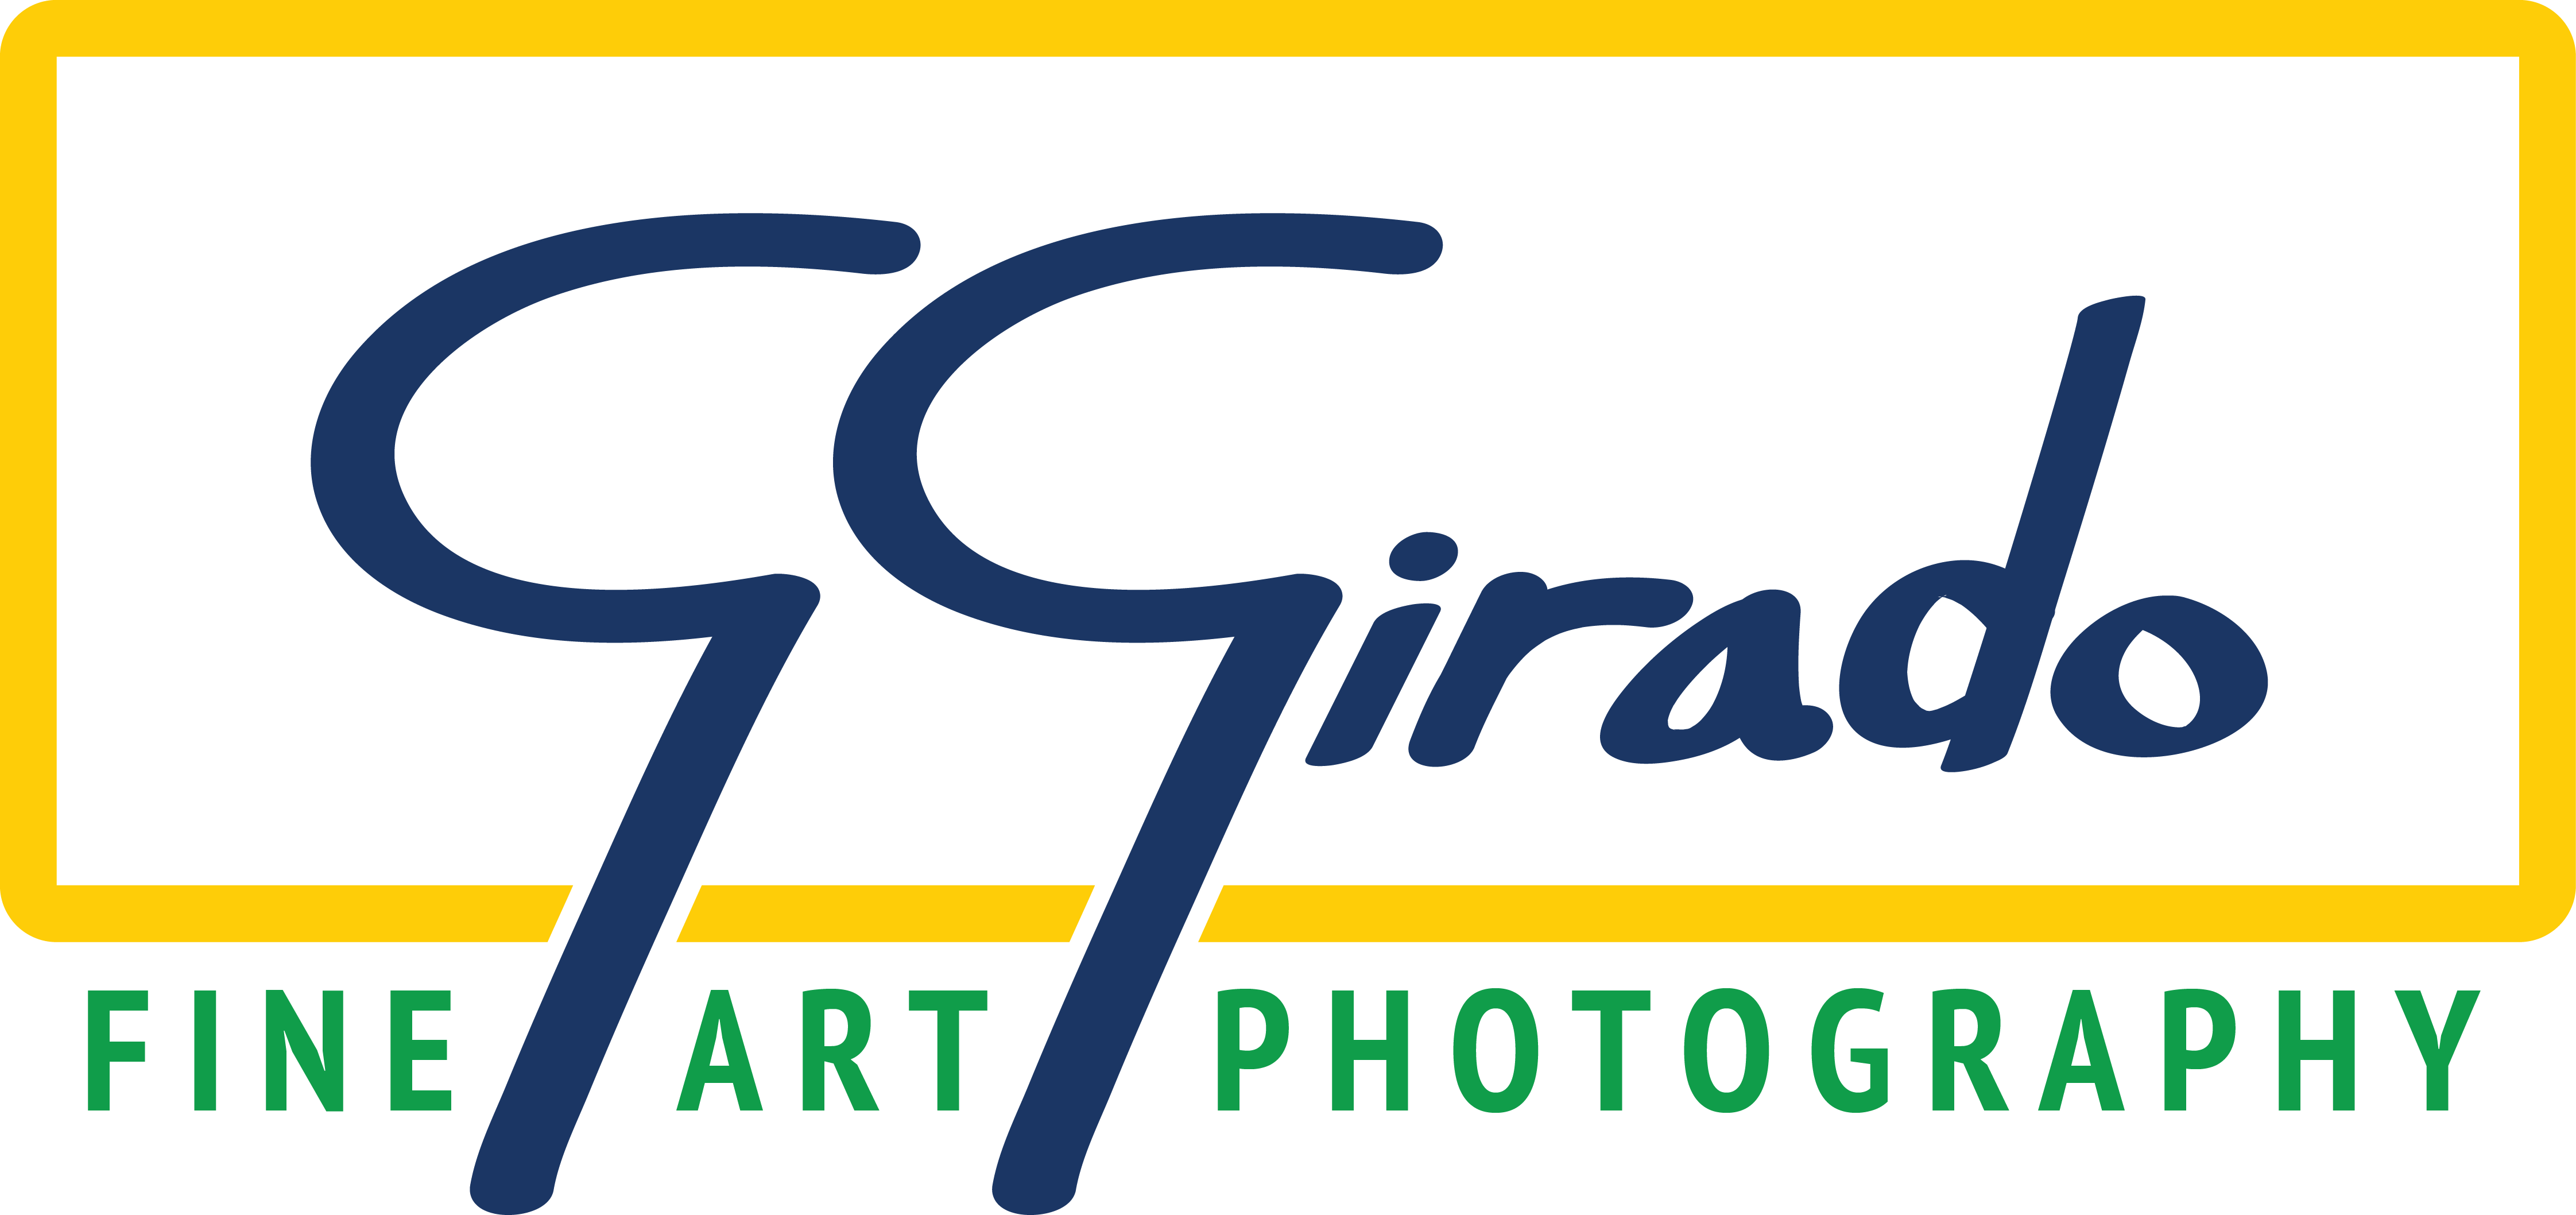 G. Girado Fine Art Photography Logo